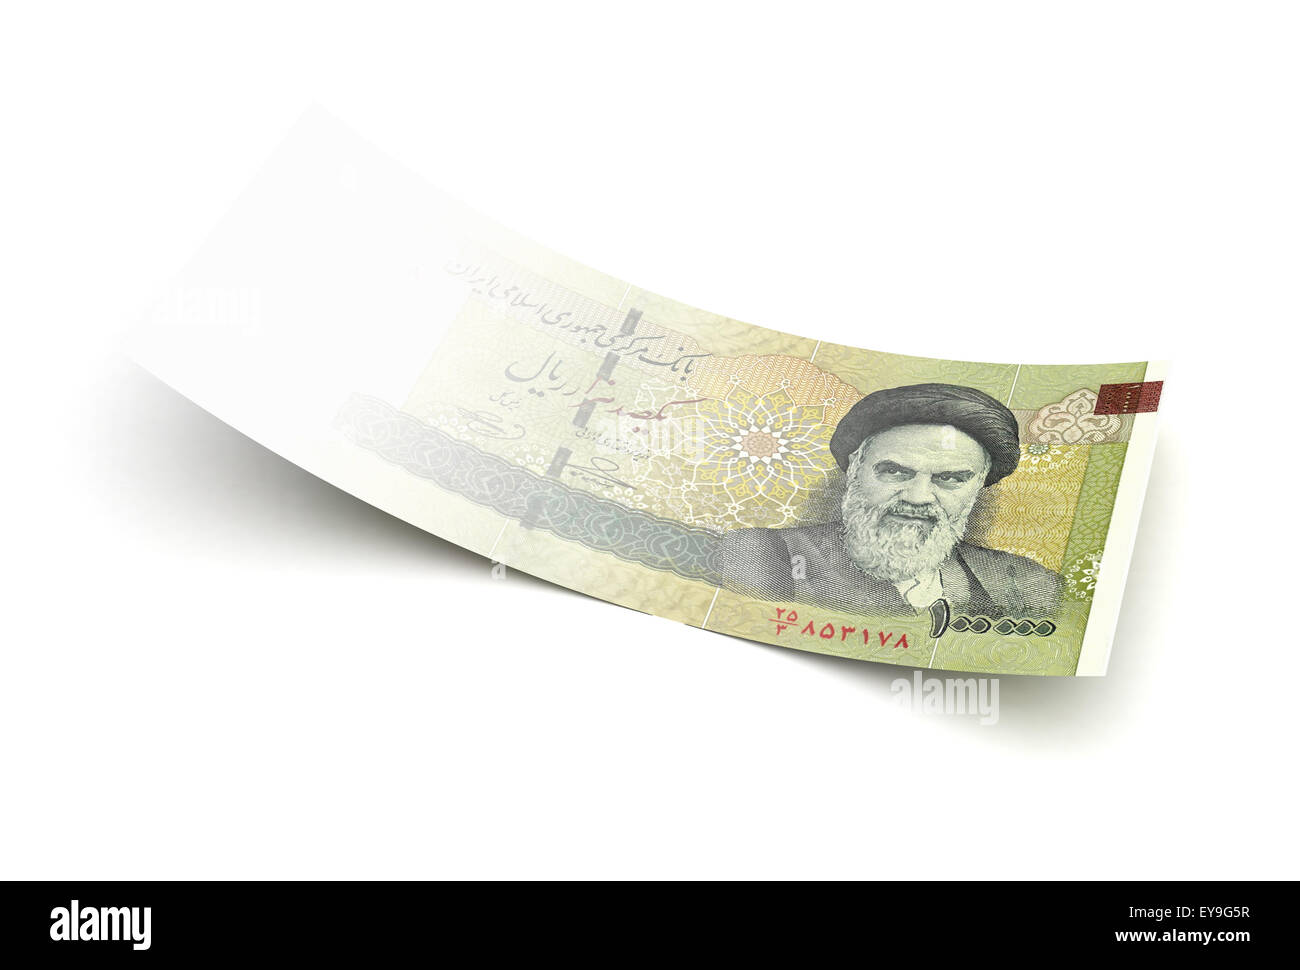 Économie mauvais rial iranien (isolé avec clipping path) Banque D'Images